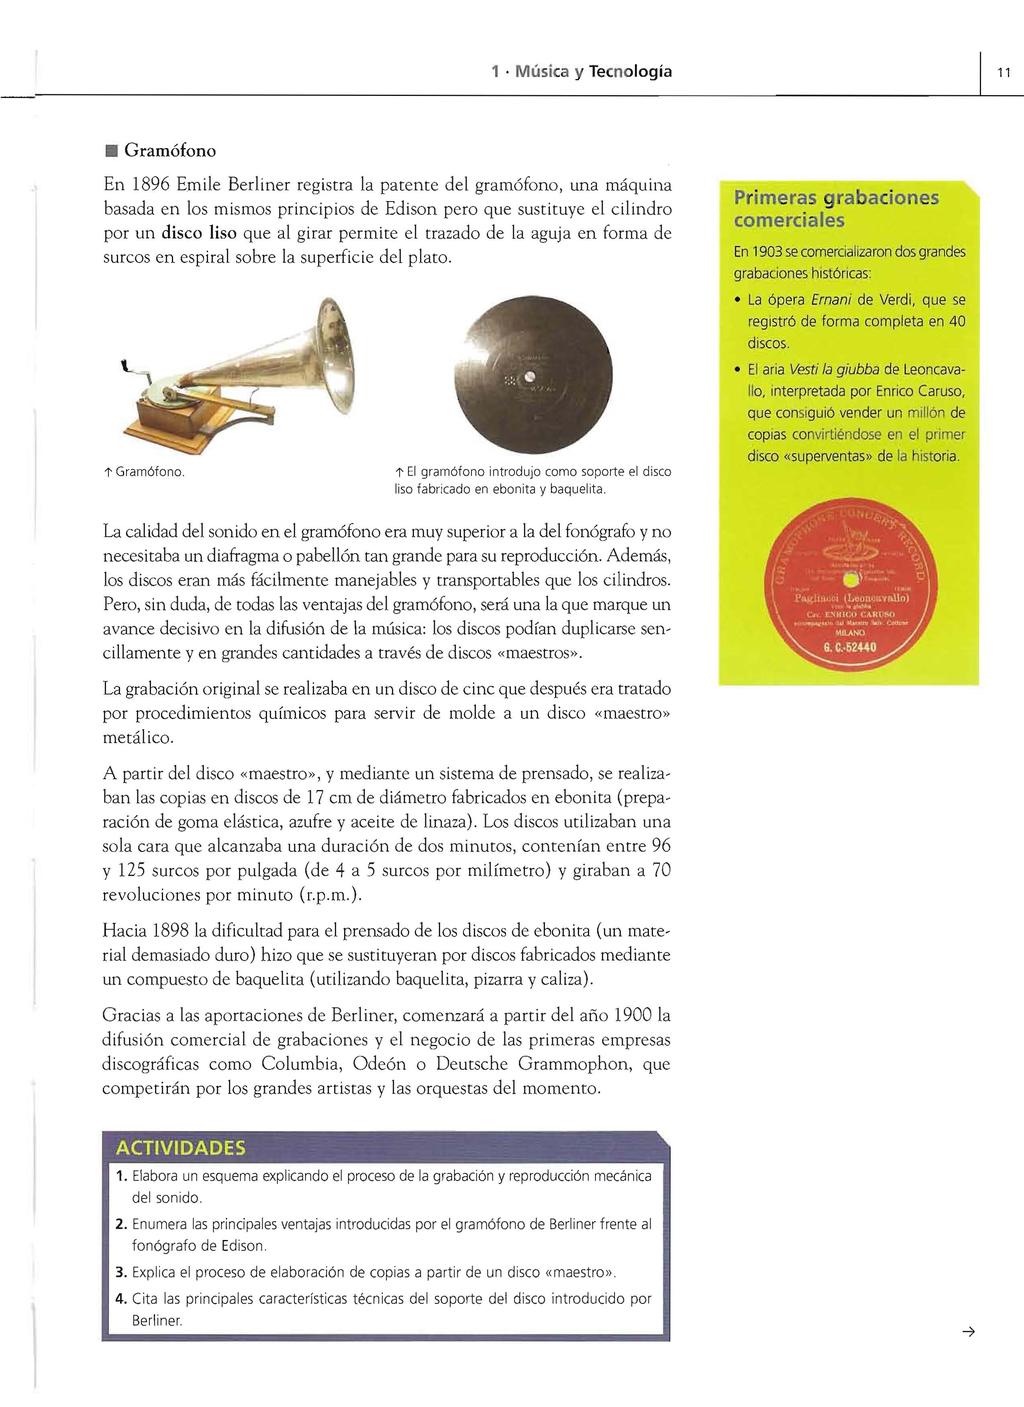 1. Música y Tecnología 11 Gramófono En 1896 Emile Berliner registra la patente del gramófono, una máquina basada en los mismos principios de Edison pero que sustituye el cilindro por un disco liso